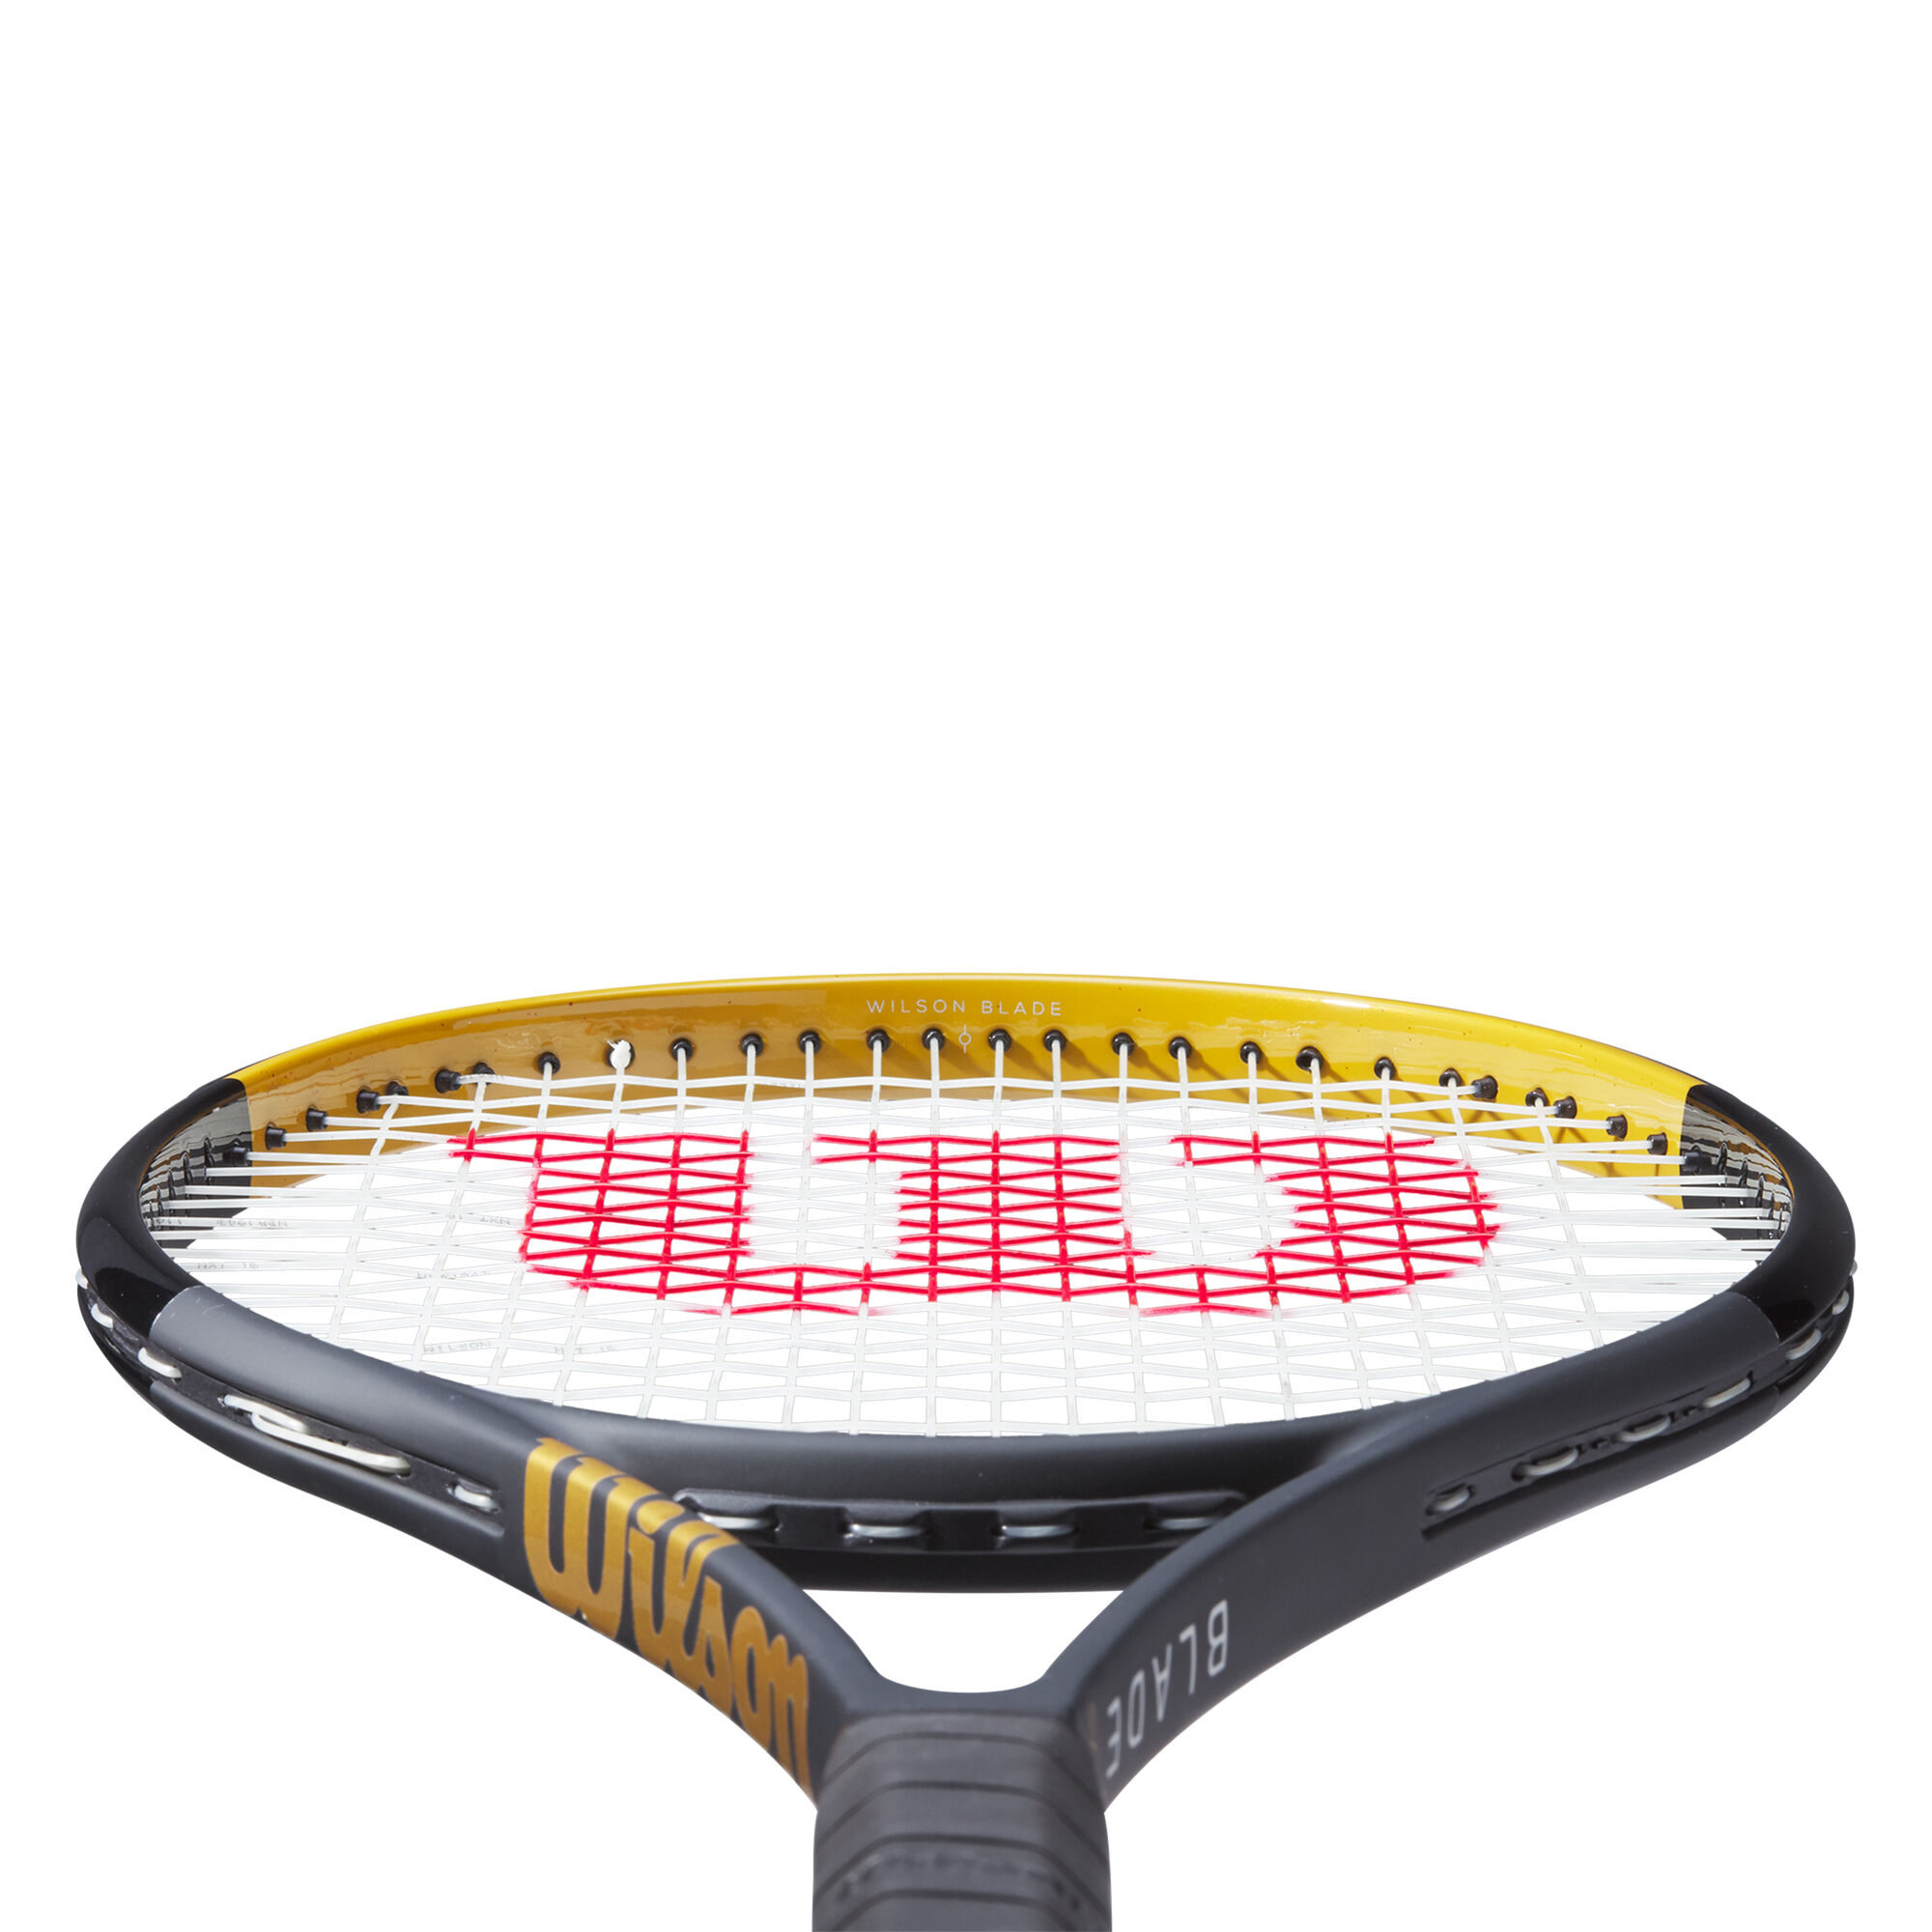 Penetratie diamant anker buy Wilson Blade 102 SW Tour Racket online | Tennis-Point